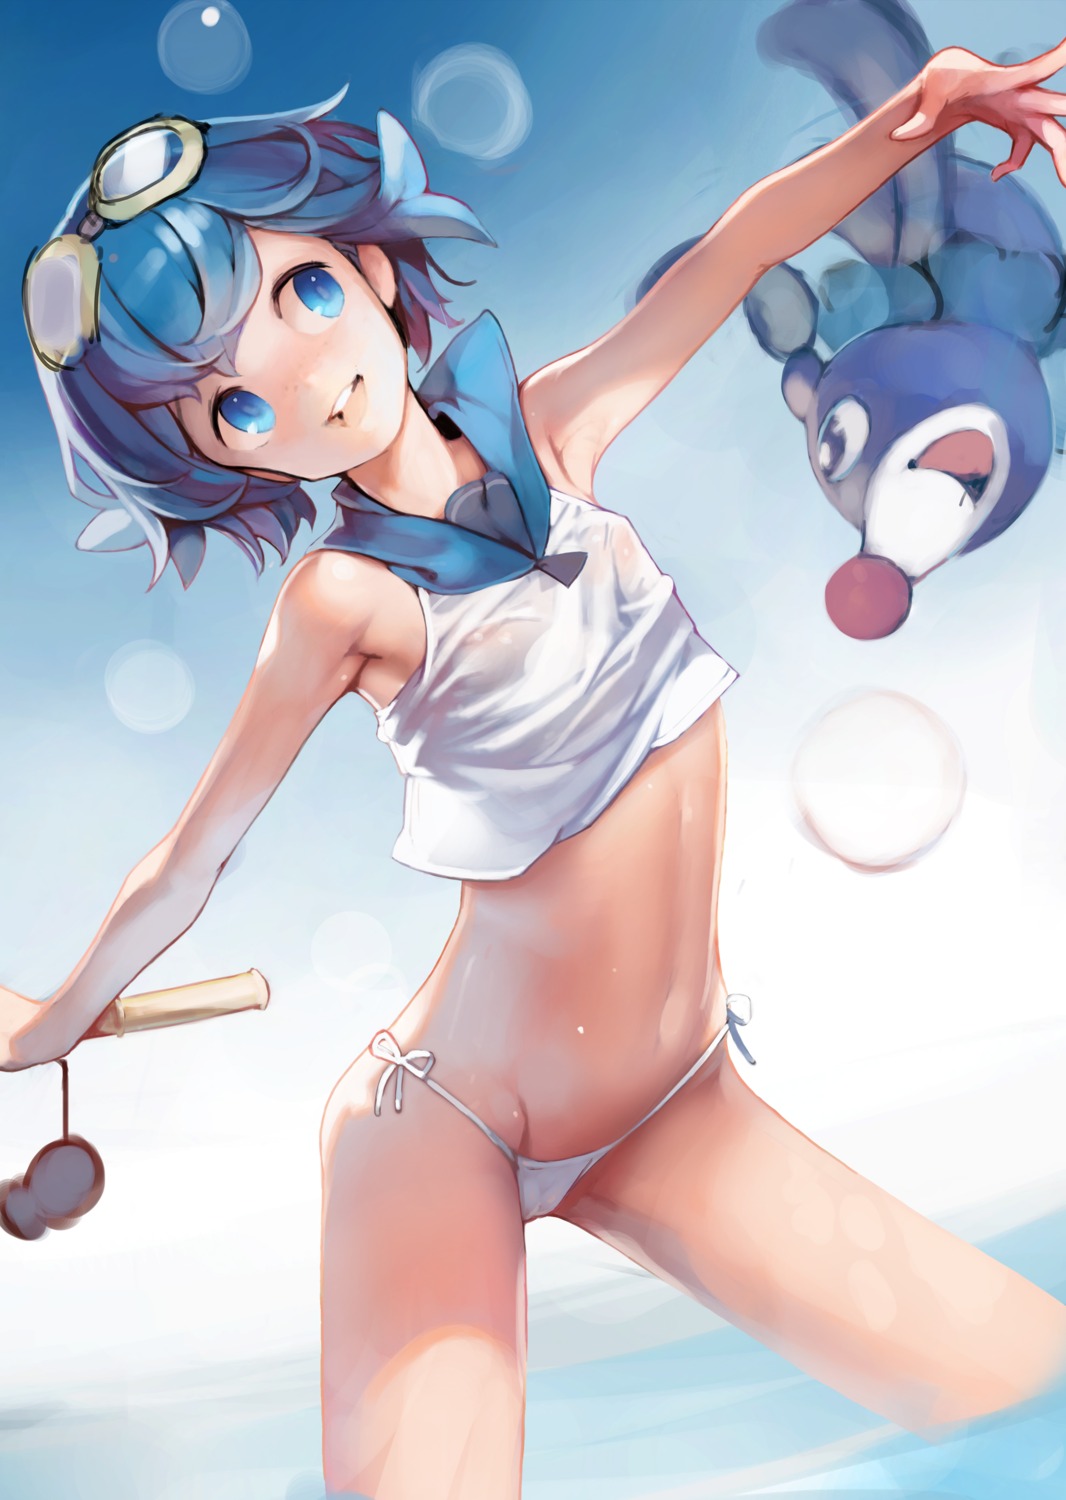 ataruman bikini cameltoe loli pokemon pokemon_sm popplio see_through suiren_(pokemon) swimsuits wet wet_clothes